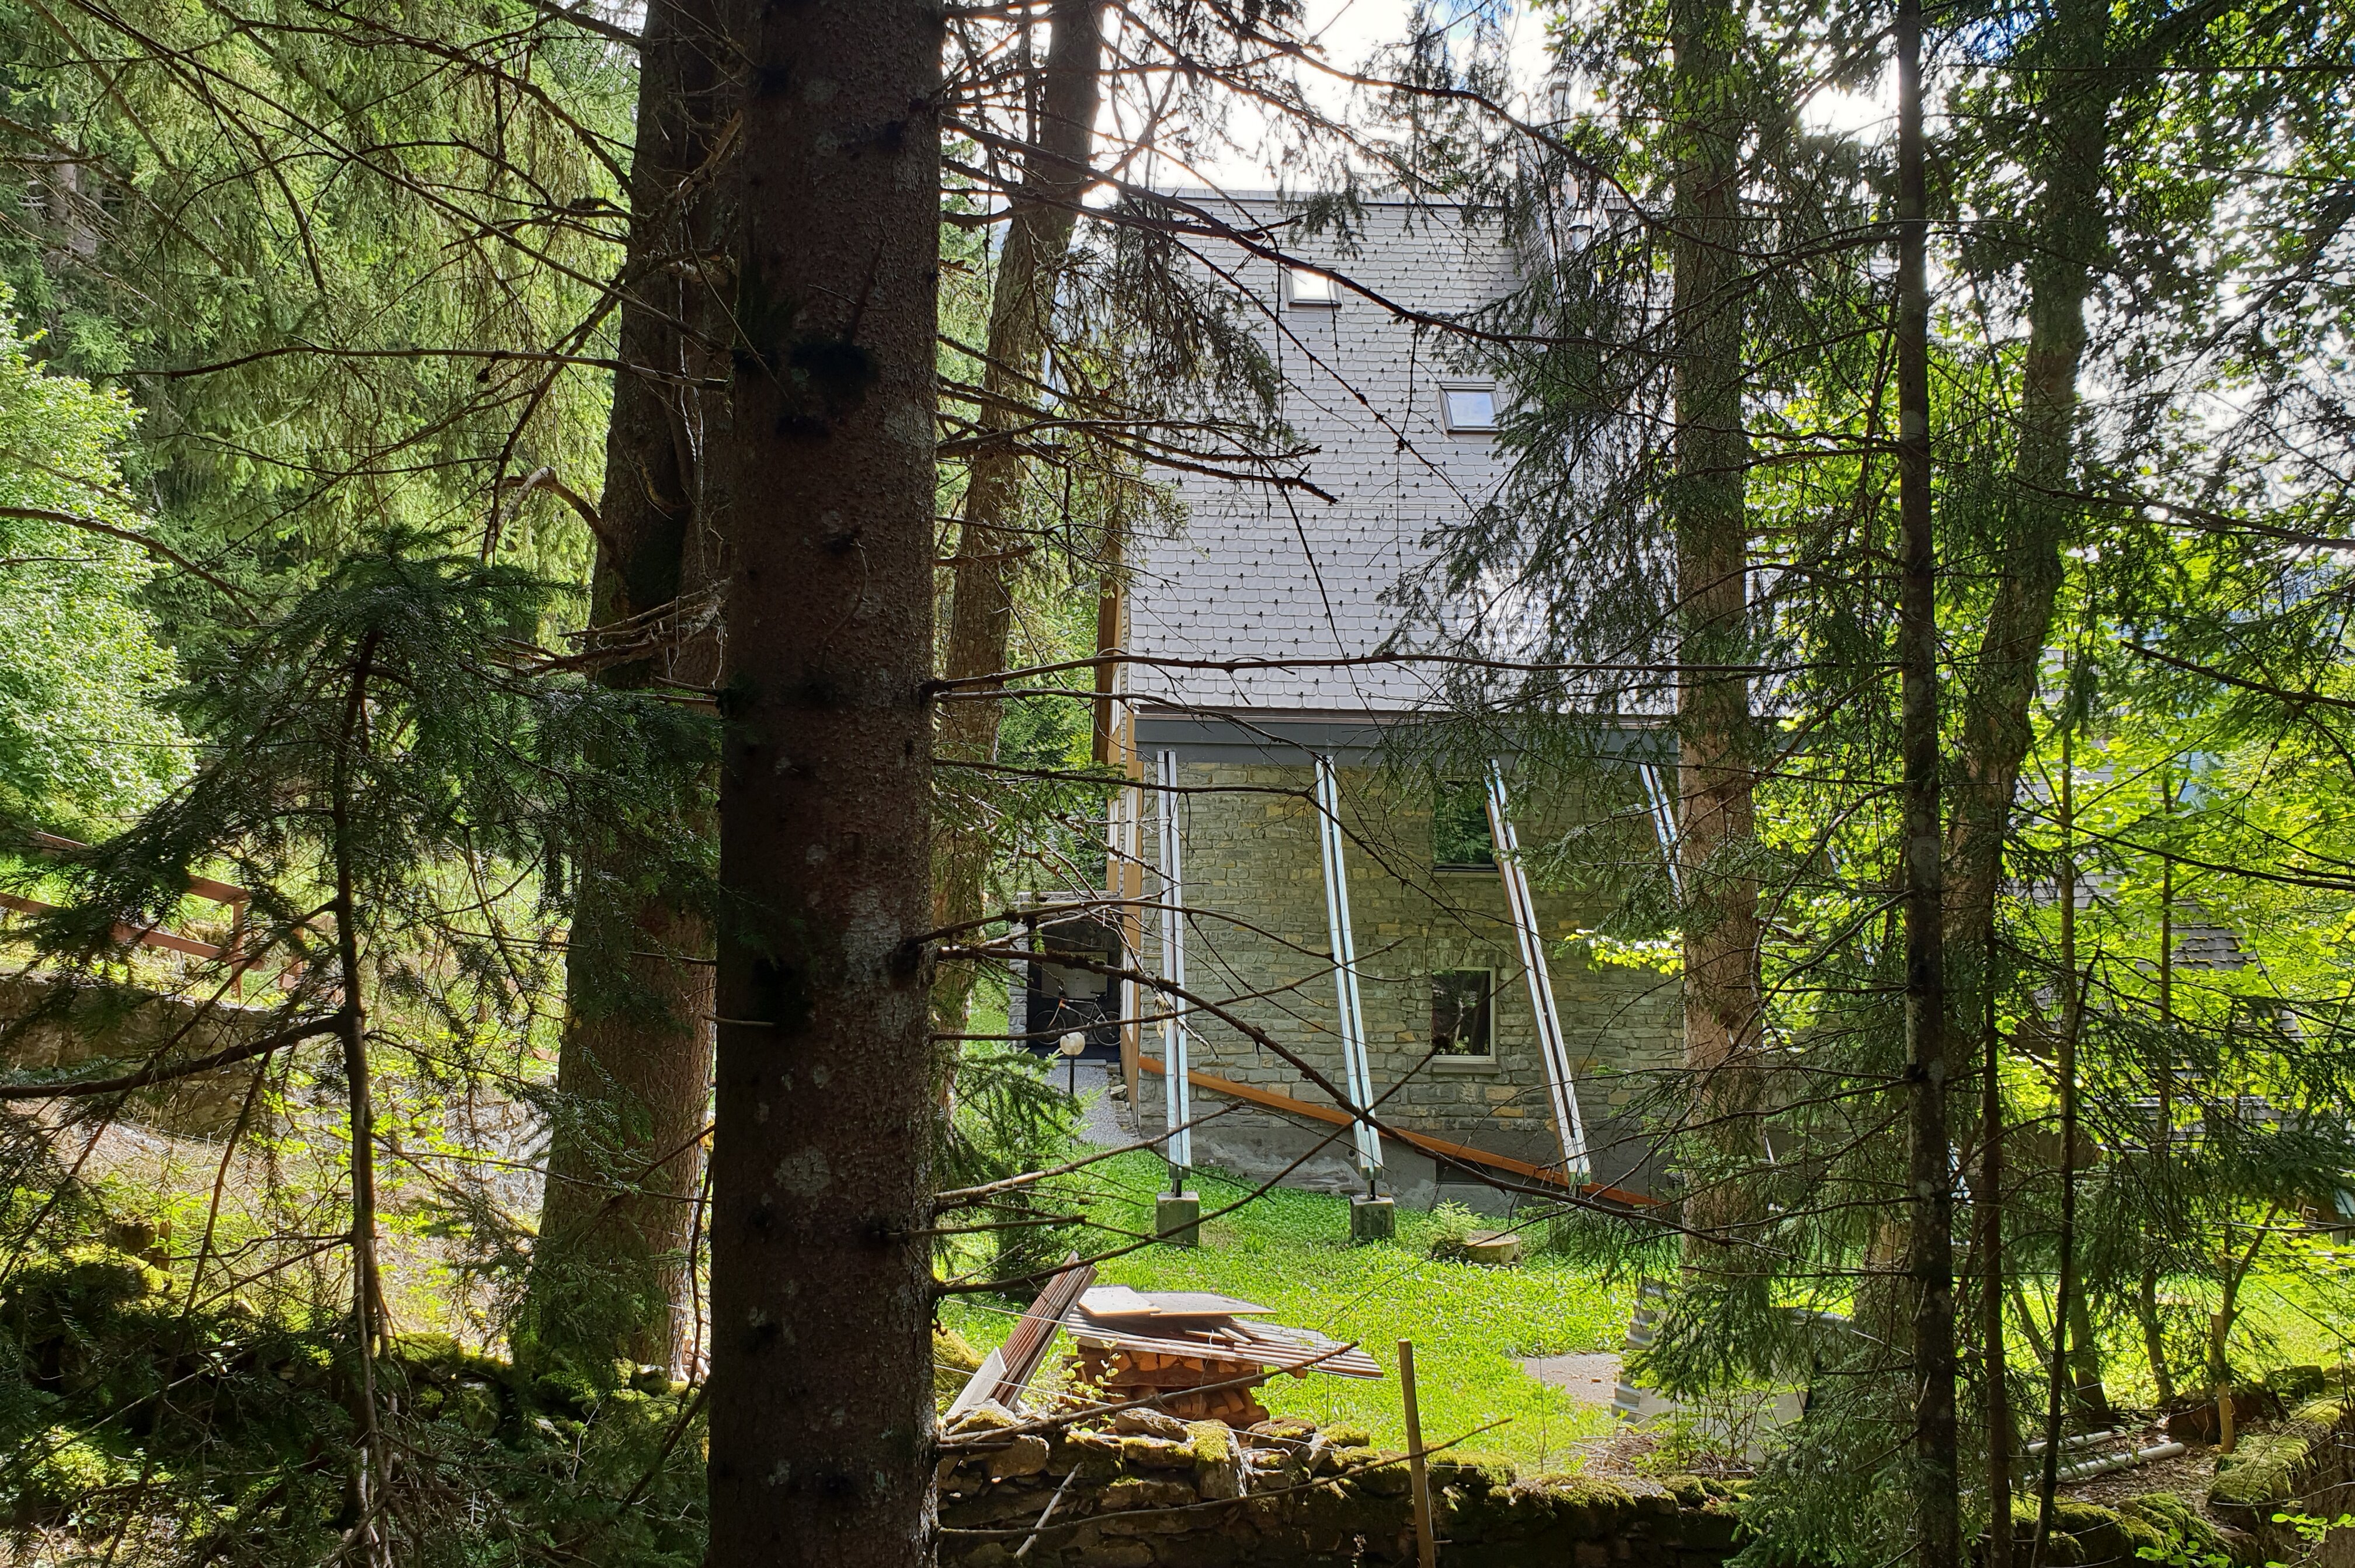 Mehrfamilien-Ferienhaus im Wald